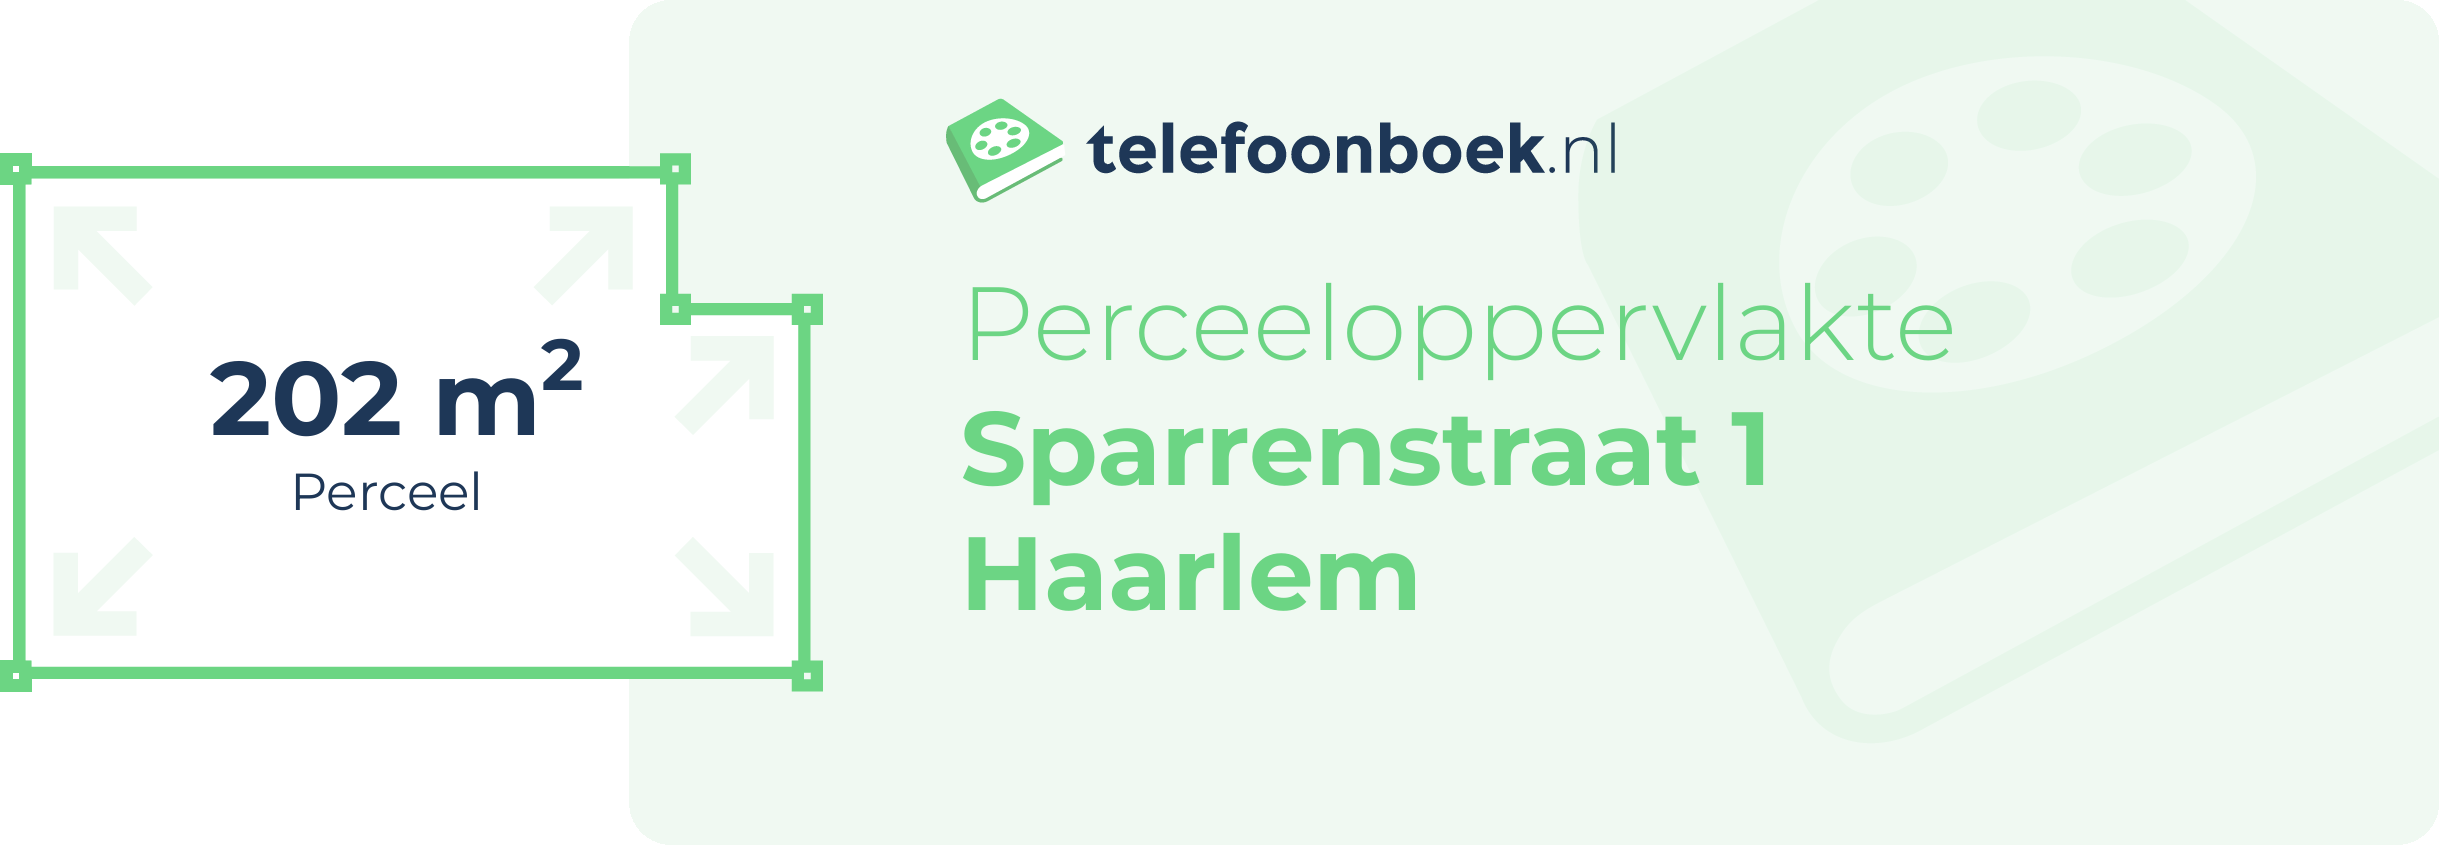 Perceeloppervlakte Sparrenstraat 1 Haarlem